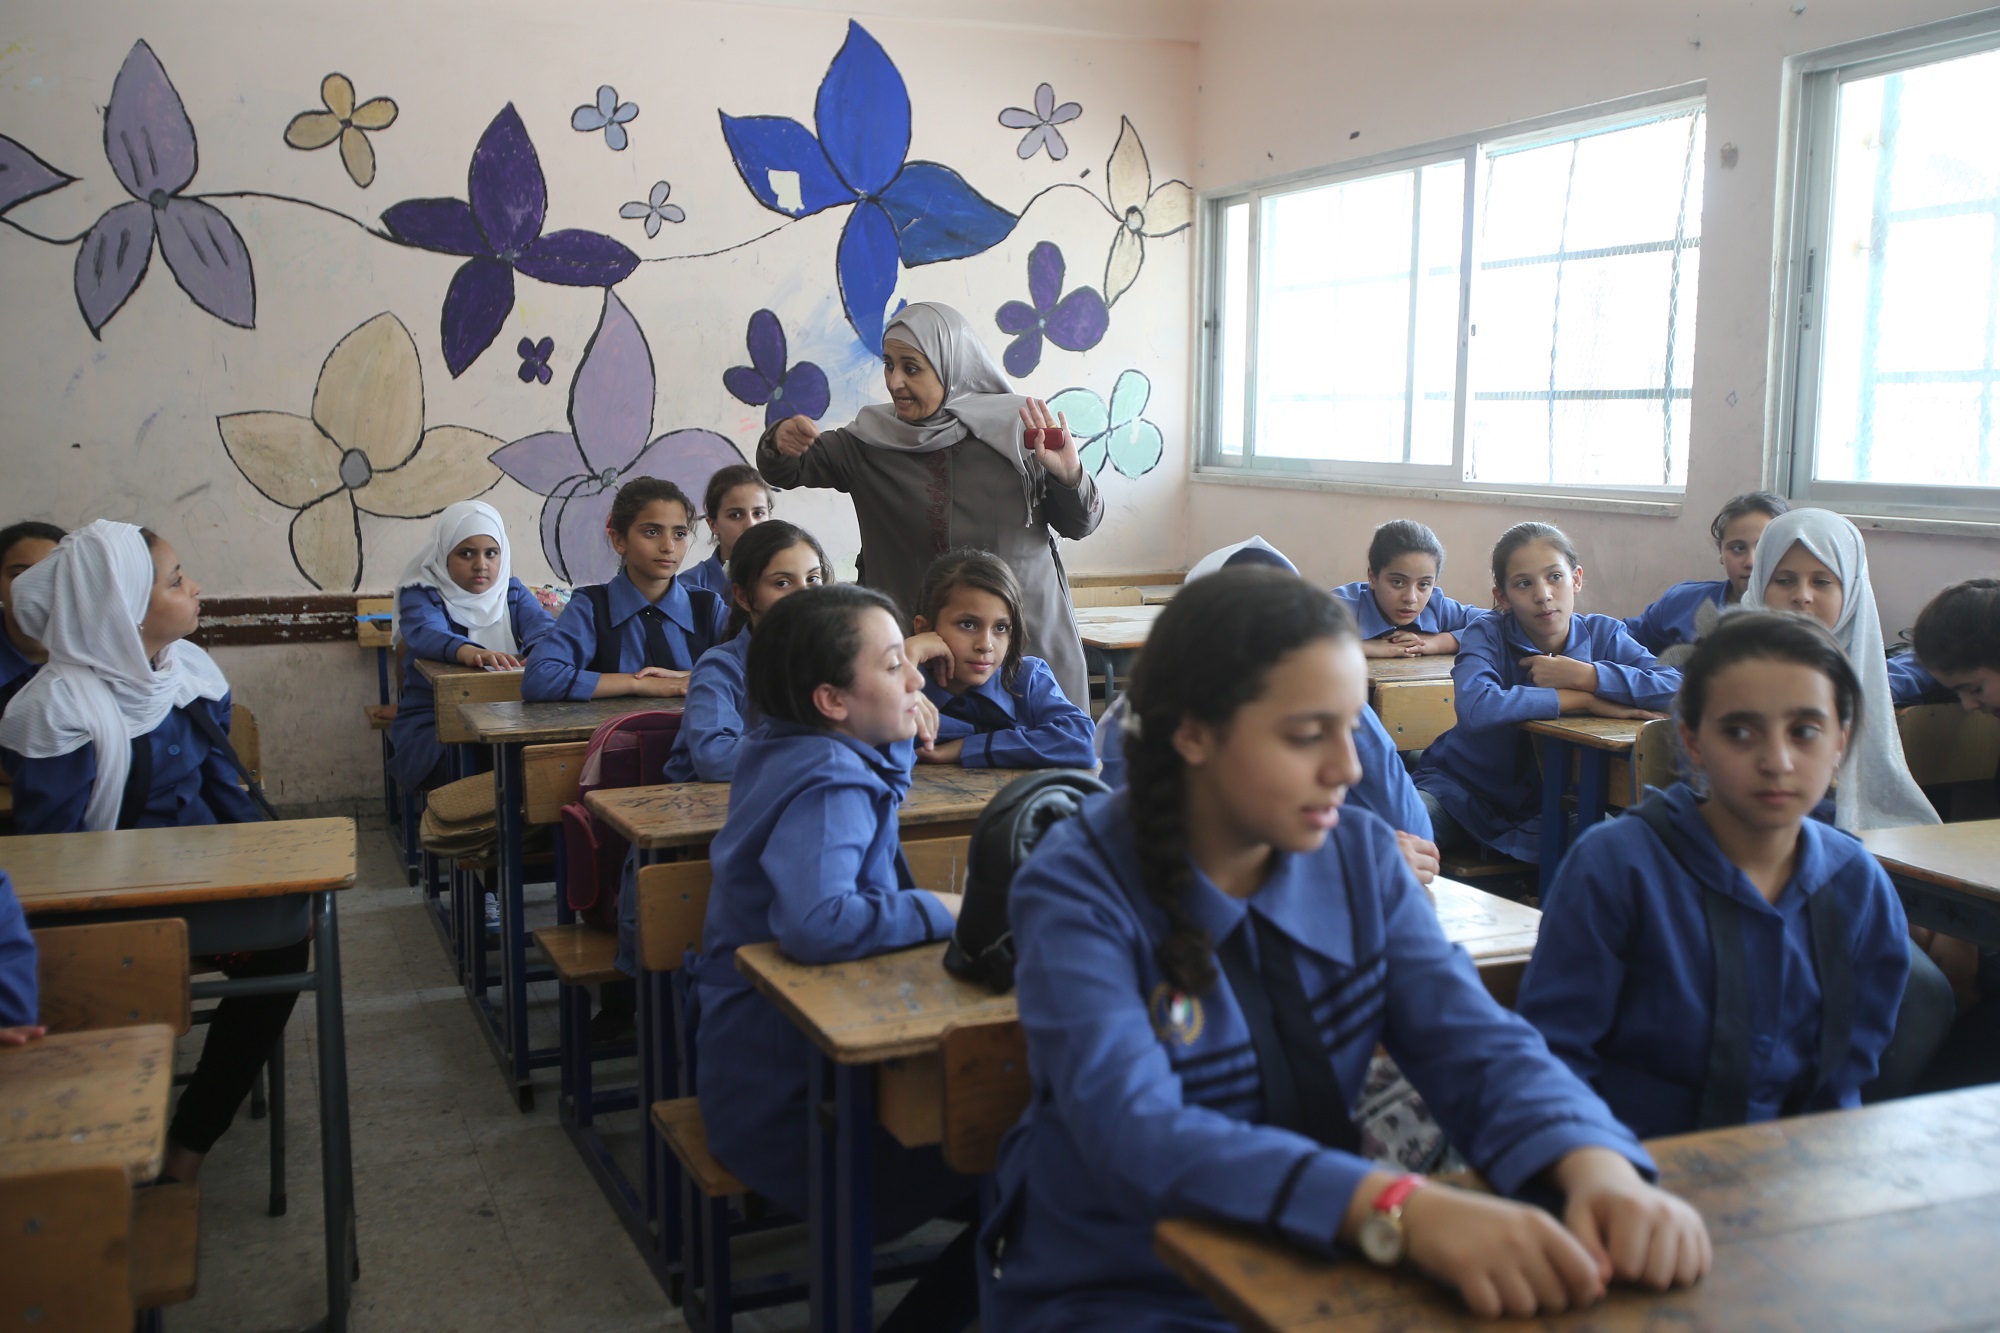 مدرسة في الأردن تابعة لوكالة الأمم المتحدة لغوث وتشغيل اللاجئين الفلسطينيين "أونروا". (صلاح ملكاوي/ المملكة)